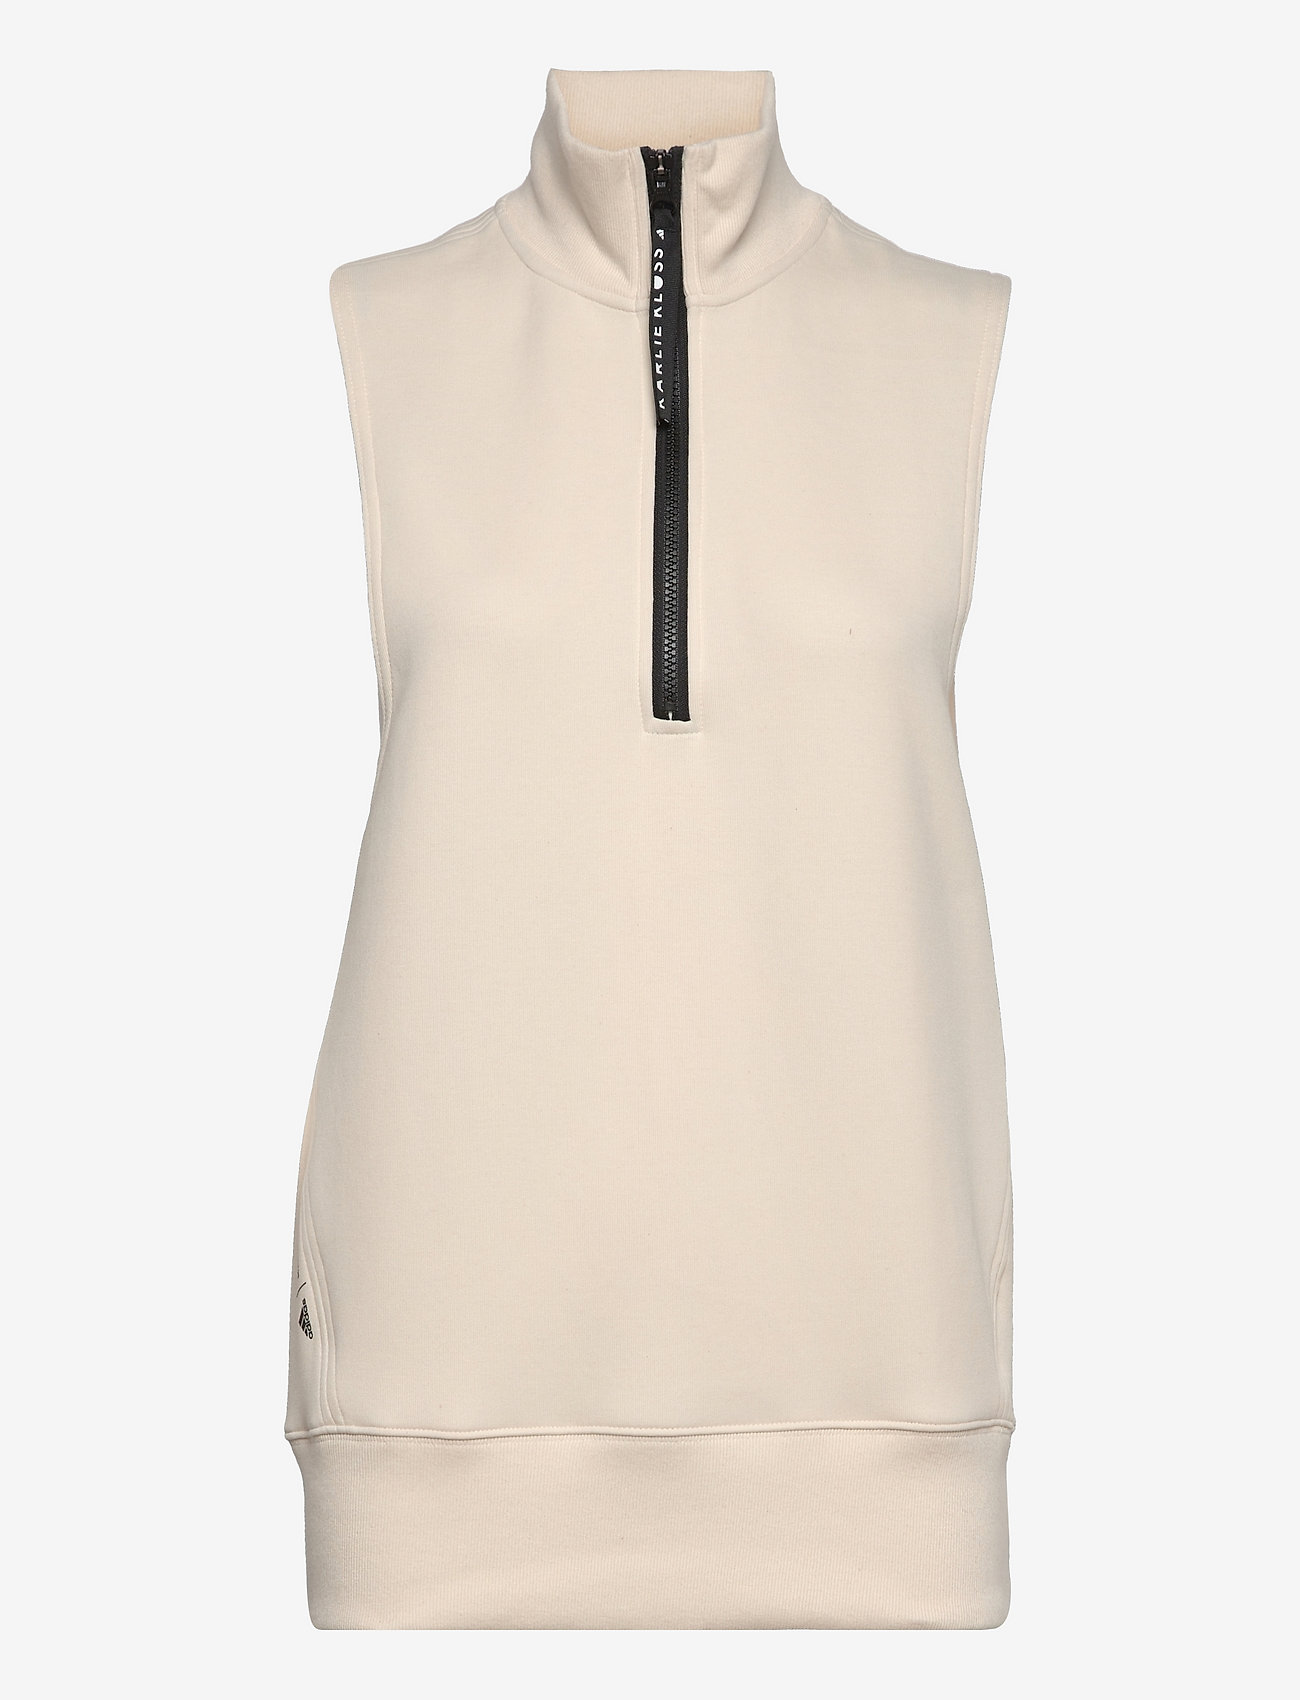 adidas Performance - Karlie Kloss Oversize Vest W - sweats et sweats à capuche - nondye - 1